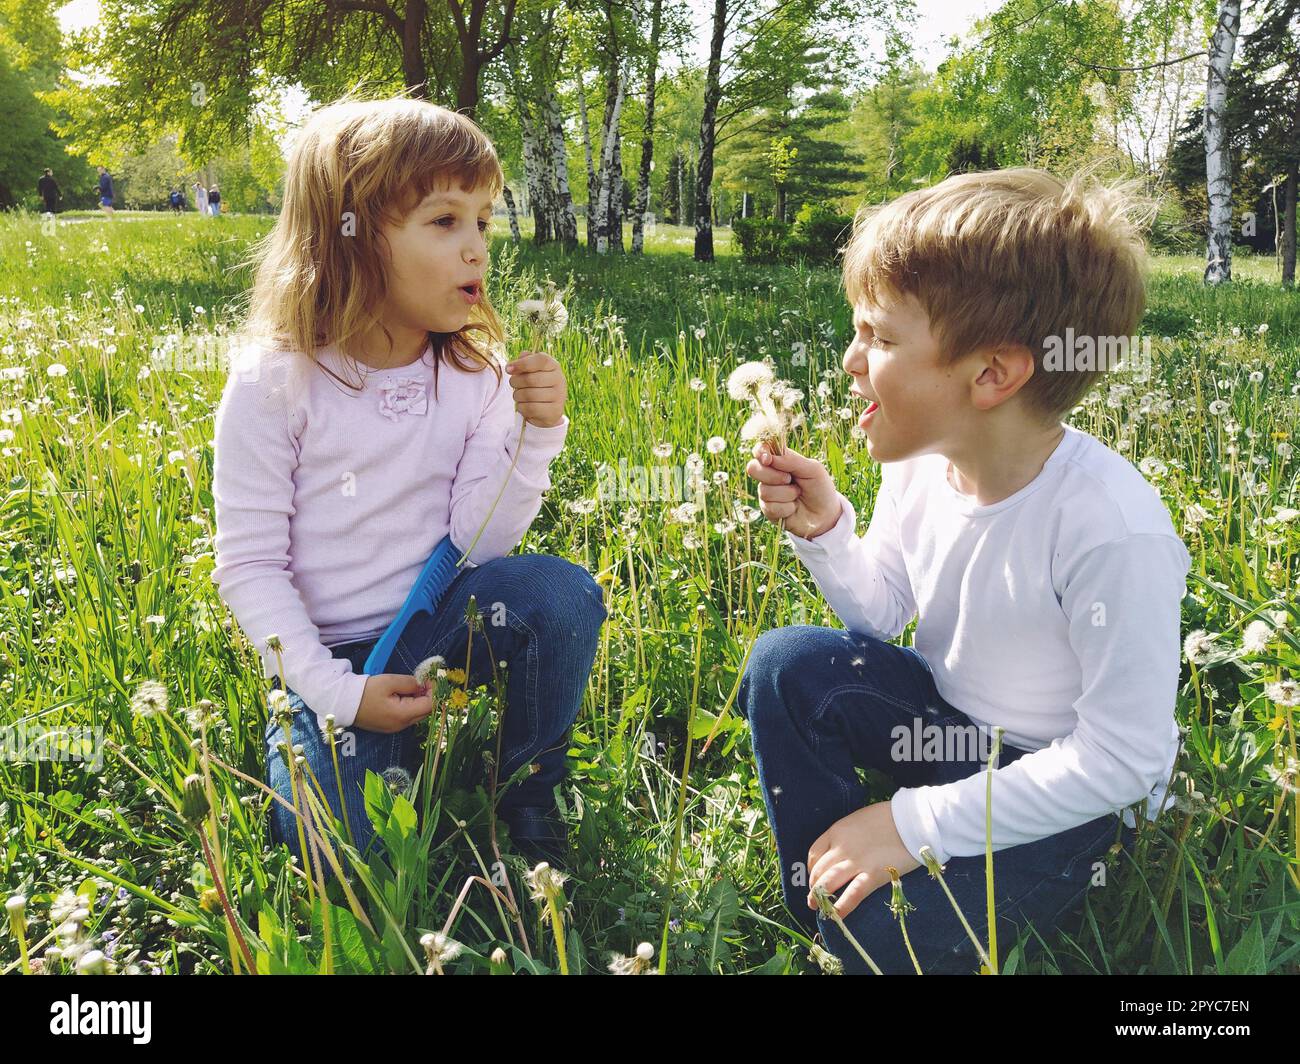 Muchacho y muchacha en la hierba. Los niños lindos recogen las flores del prado y soplan en las semillas del diente de león. Hermano y hermana llevan blusas blancas y jeans azules. Foto de stock